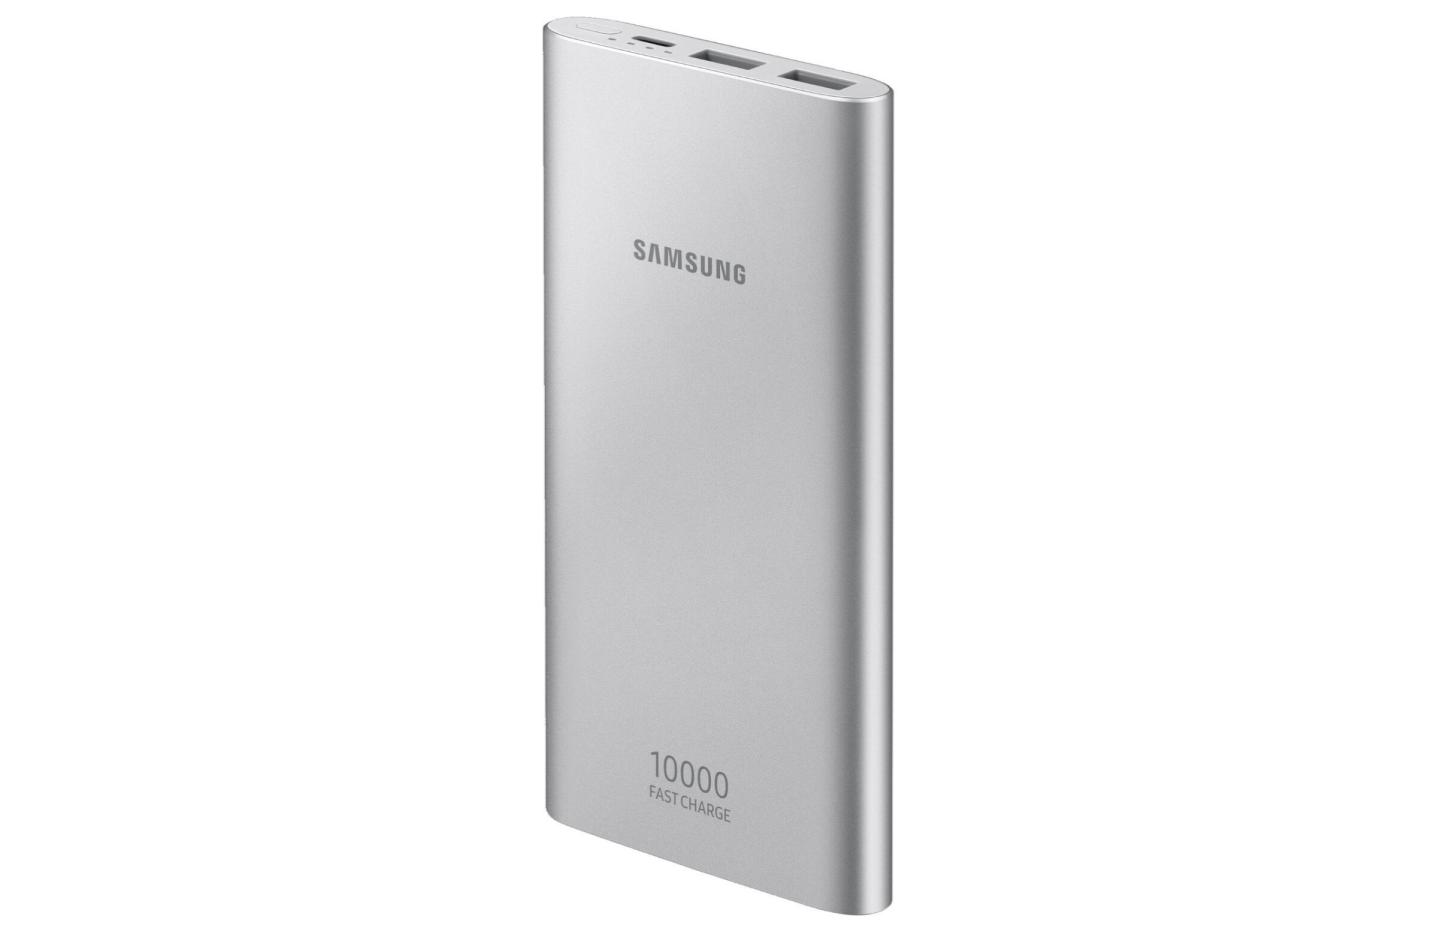 Pour seulement 15 euros, cette batterie externe Samsung peut s’évérer bien pratique